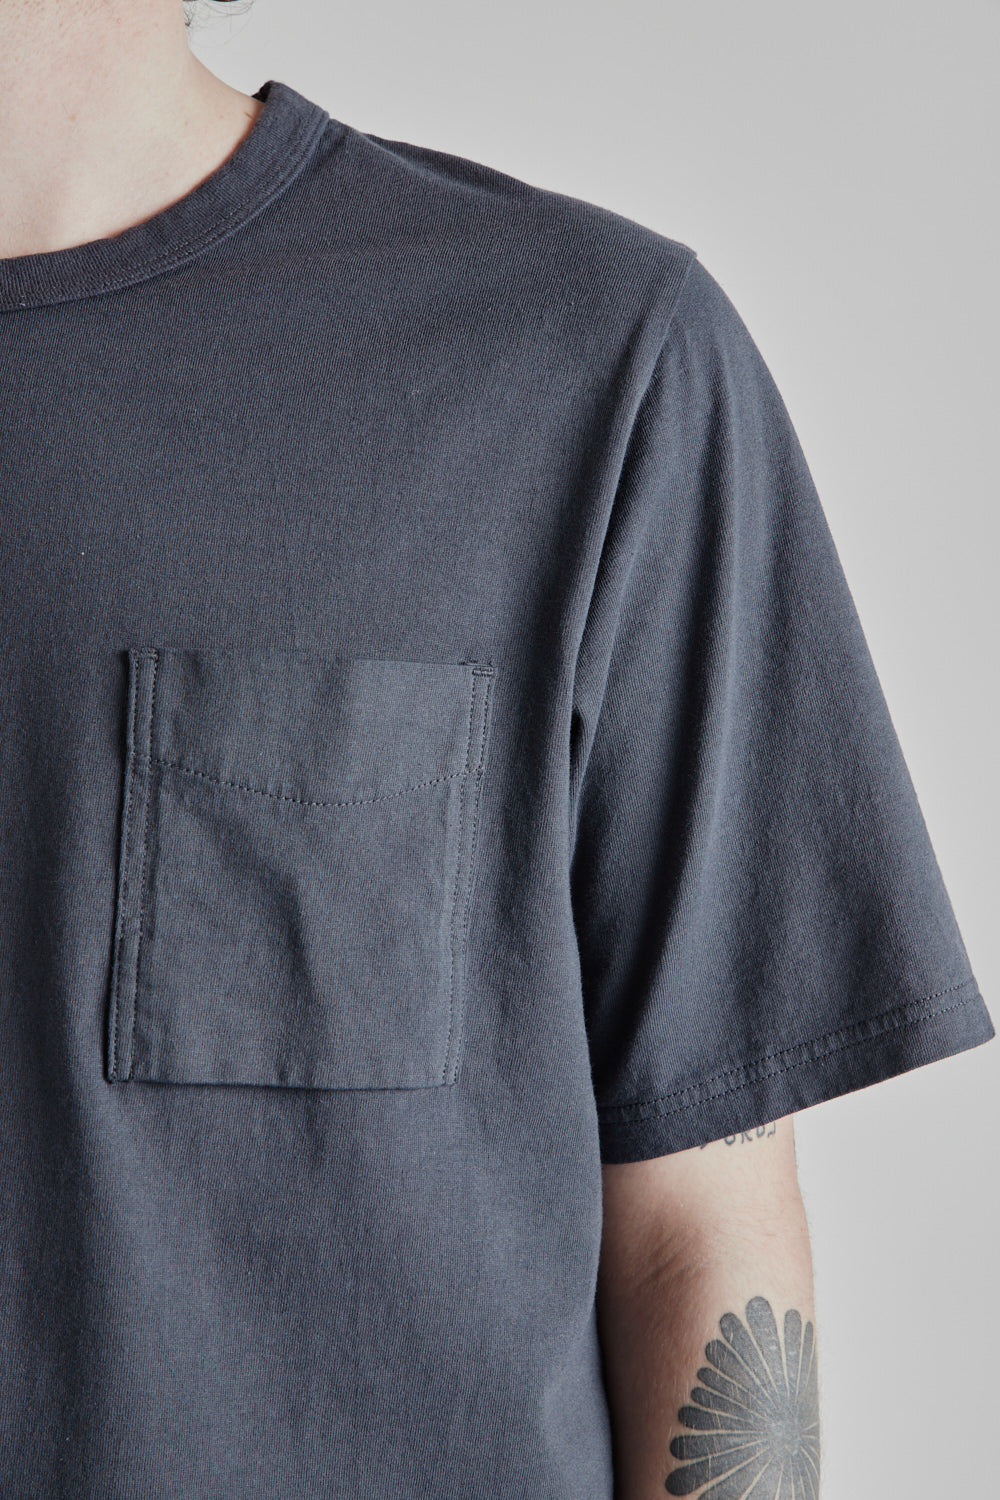 Pocket T-Shirt - Dark Blue Gray